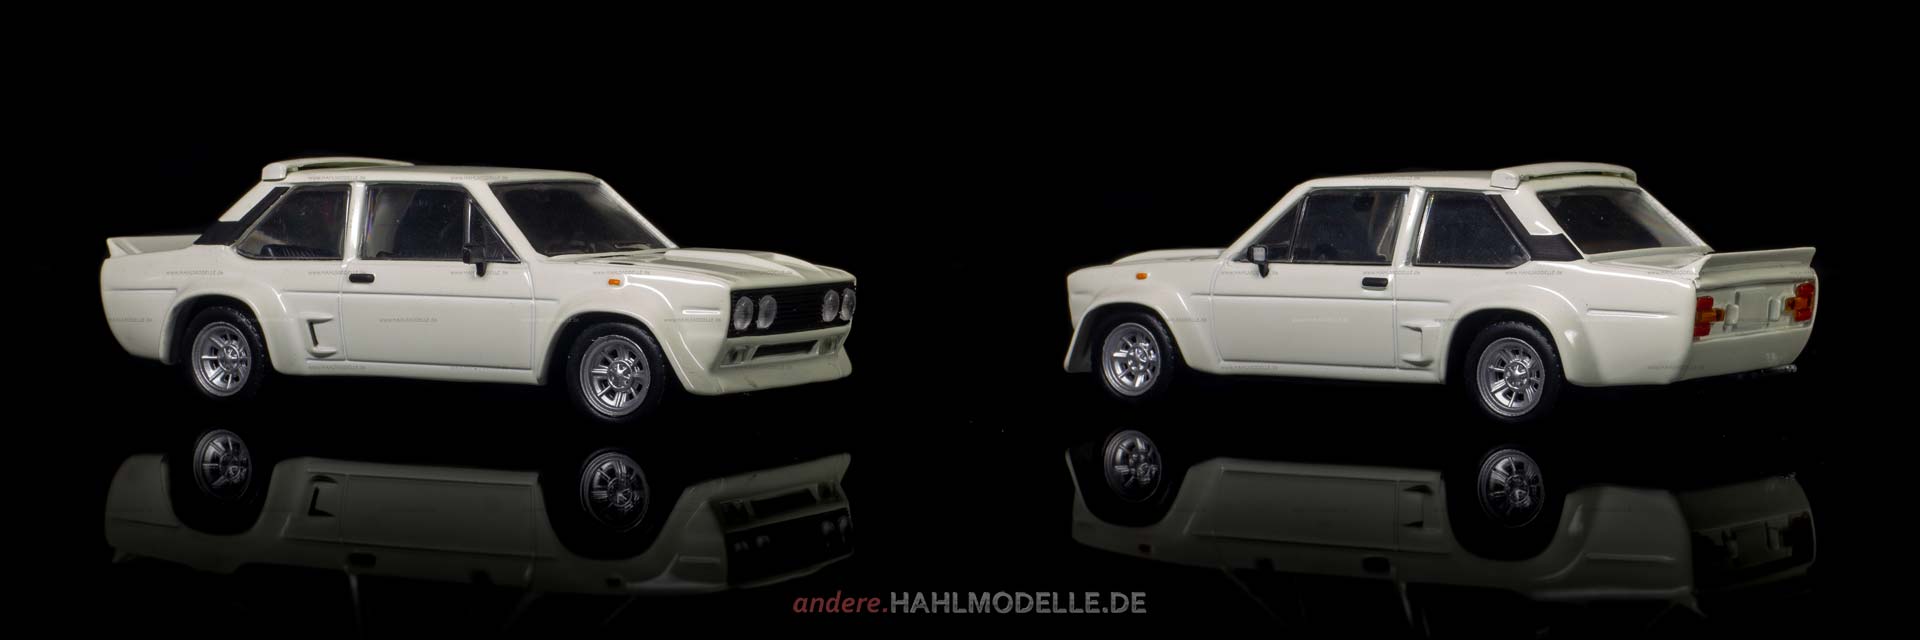 Fiat 131 Mirafiori Abarth Stradale | Limousine | Ixo (Del Prado Car Collection) | 1:43 | www.andere.hahlmodelle.de